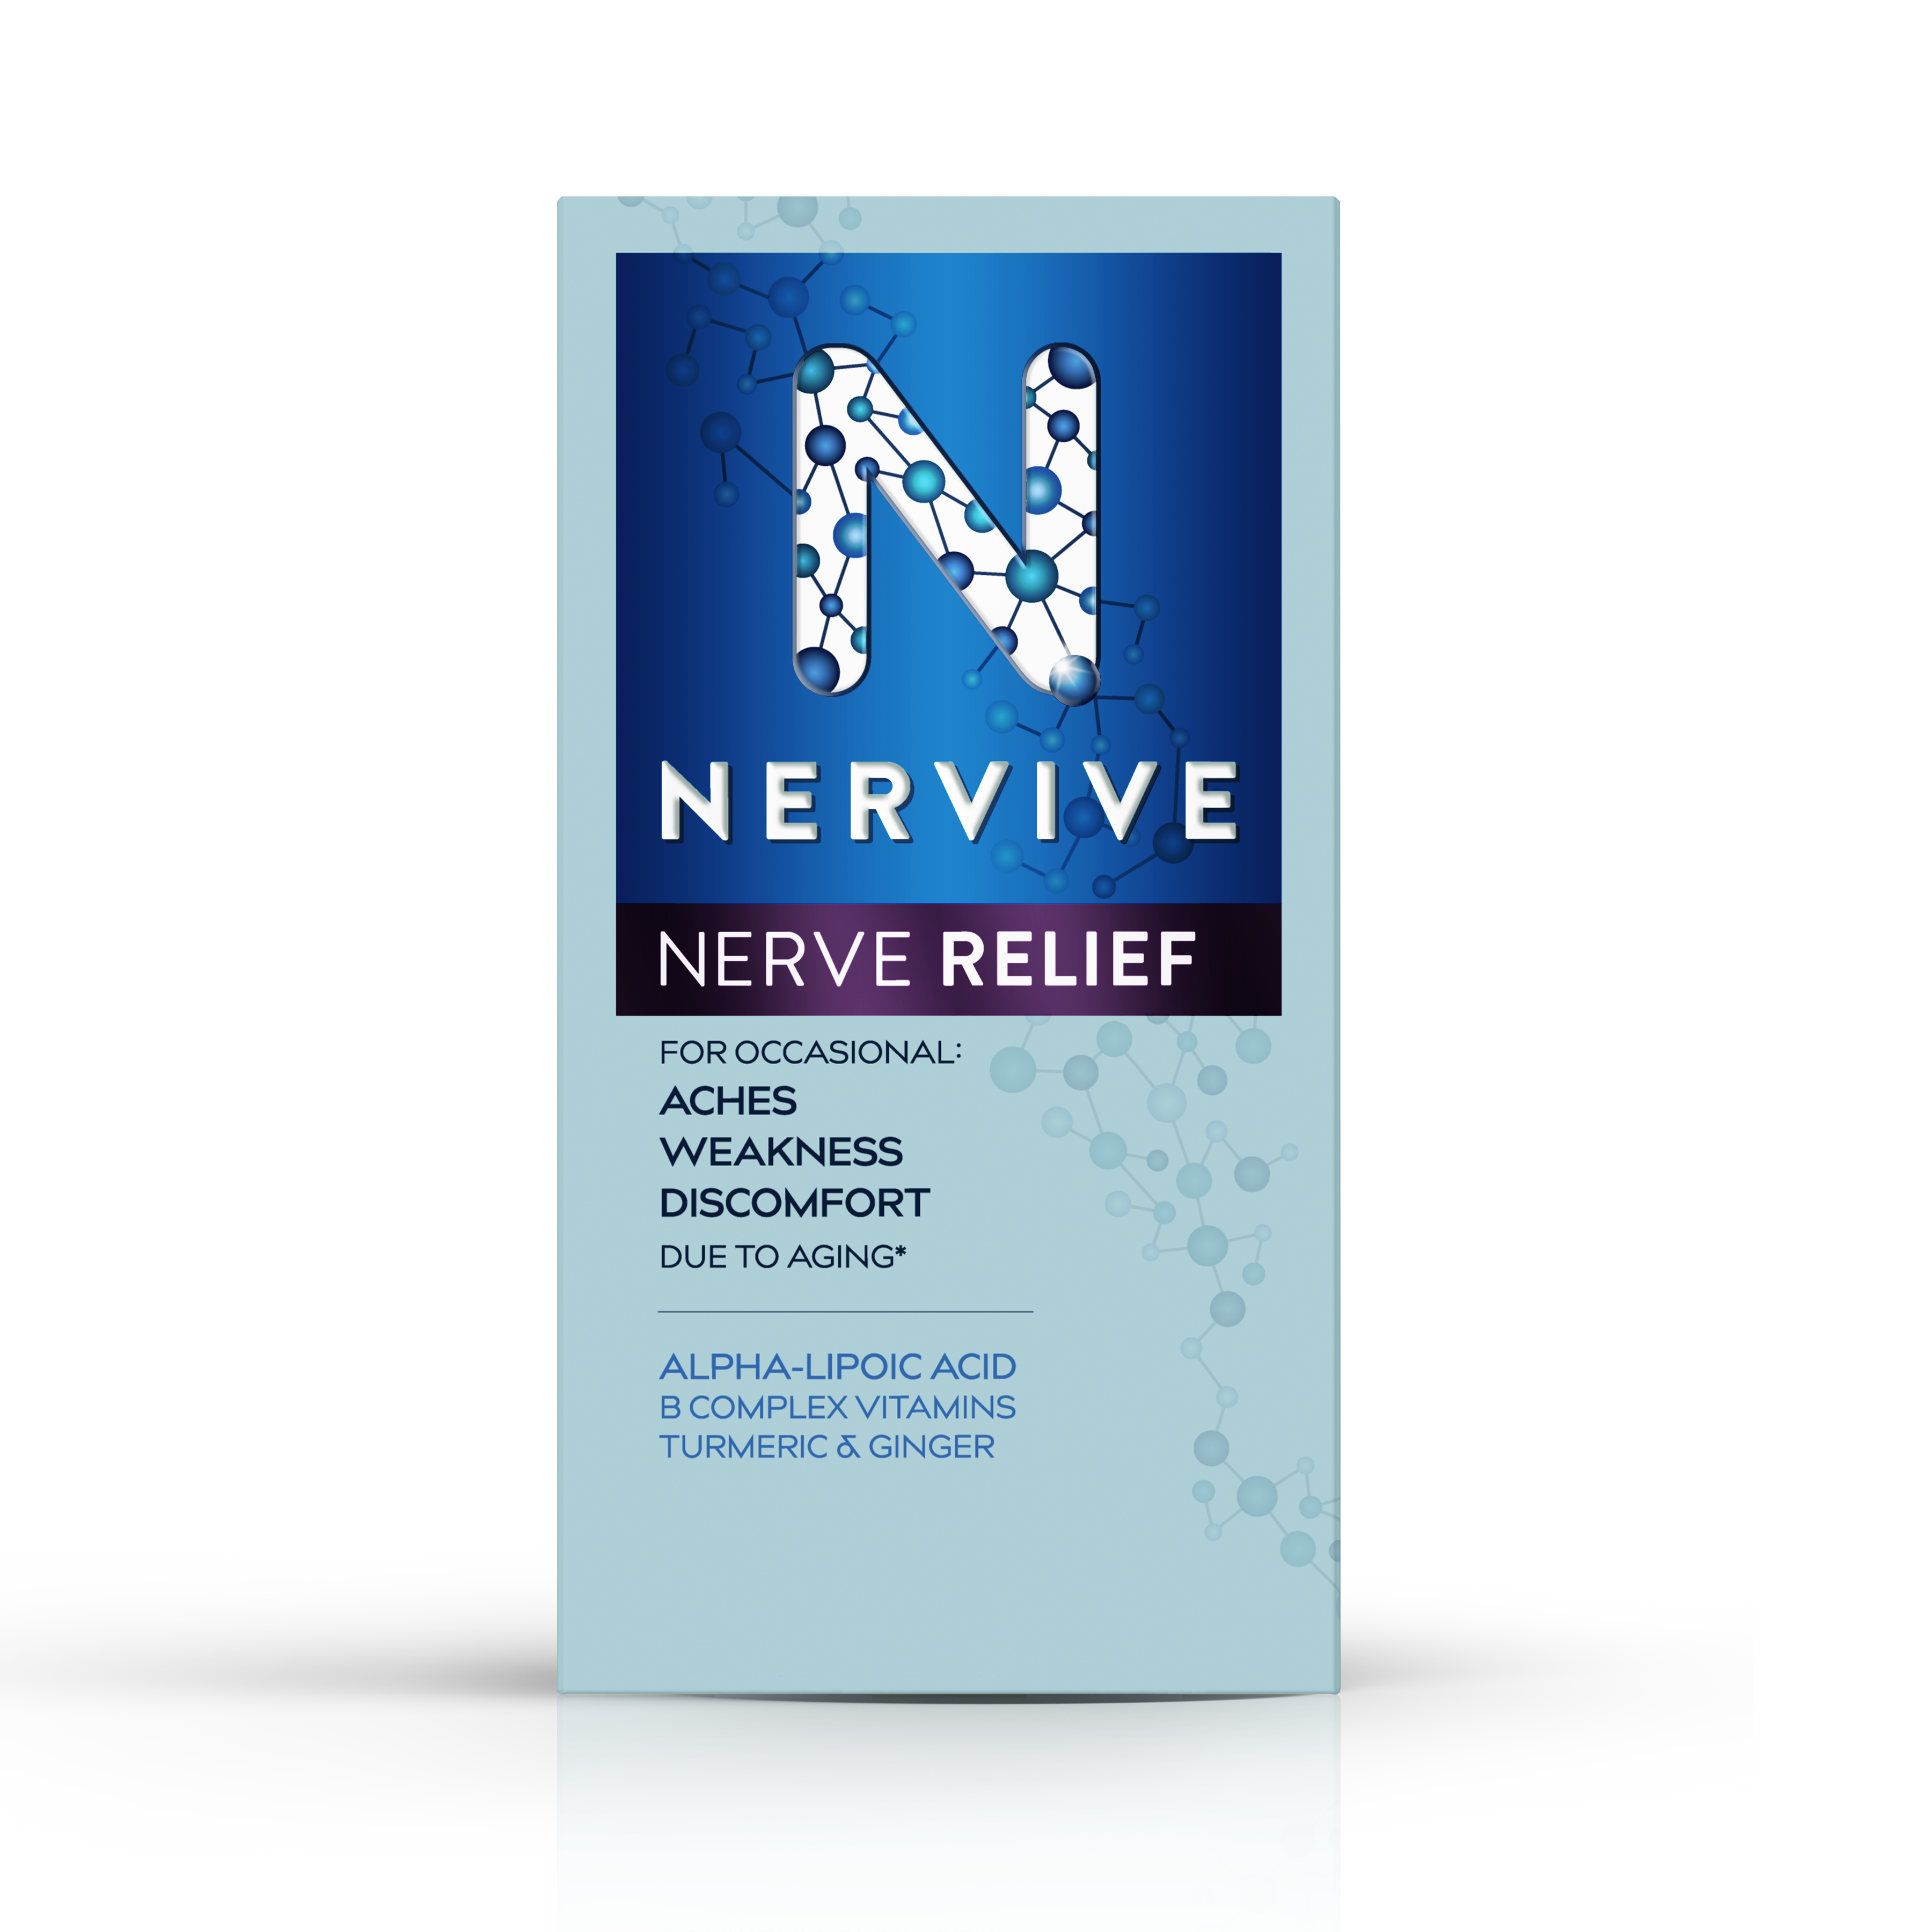 Nerve Nerve Relief